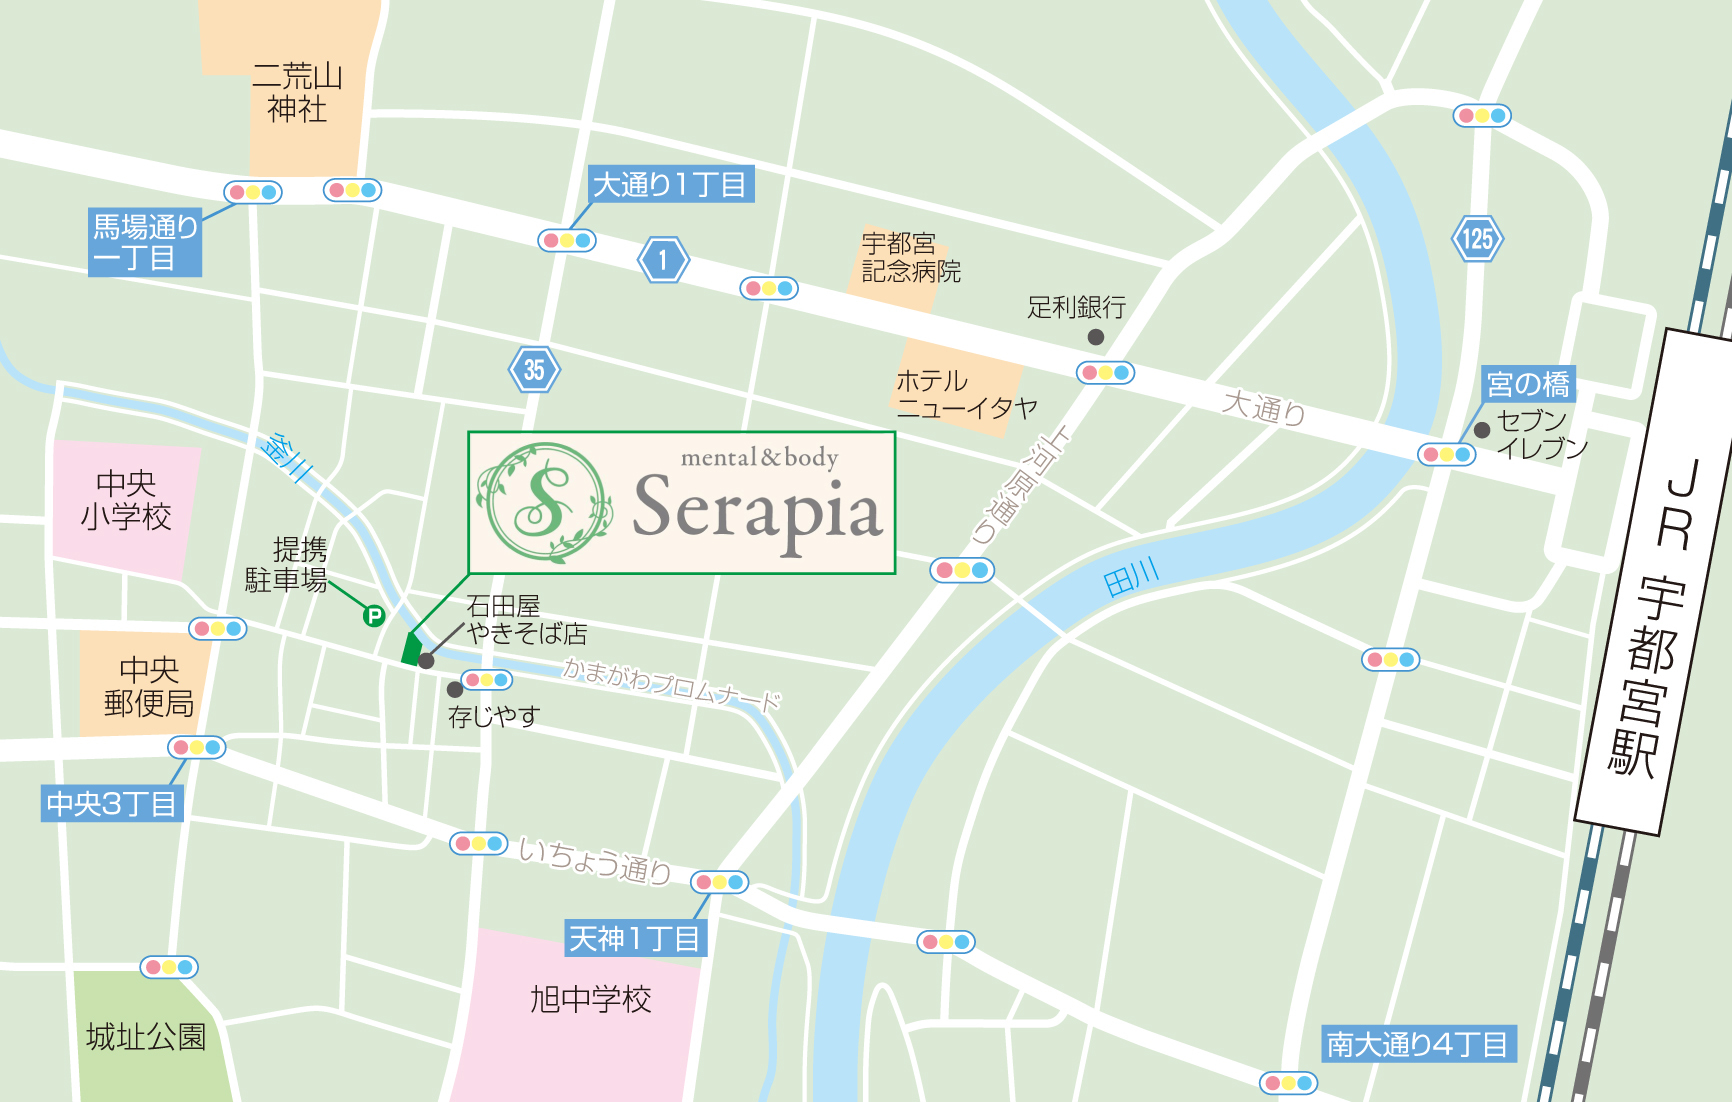 カウンセラピスト様_地図3.jpg